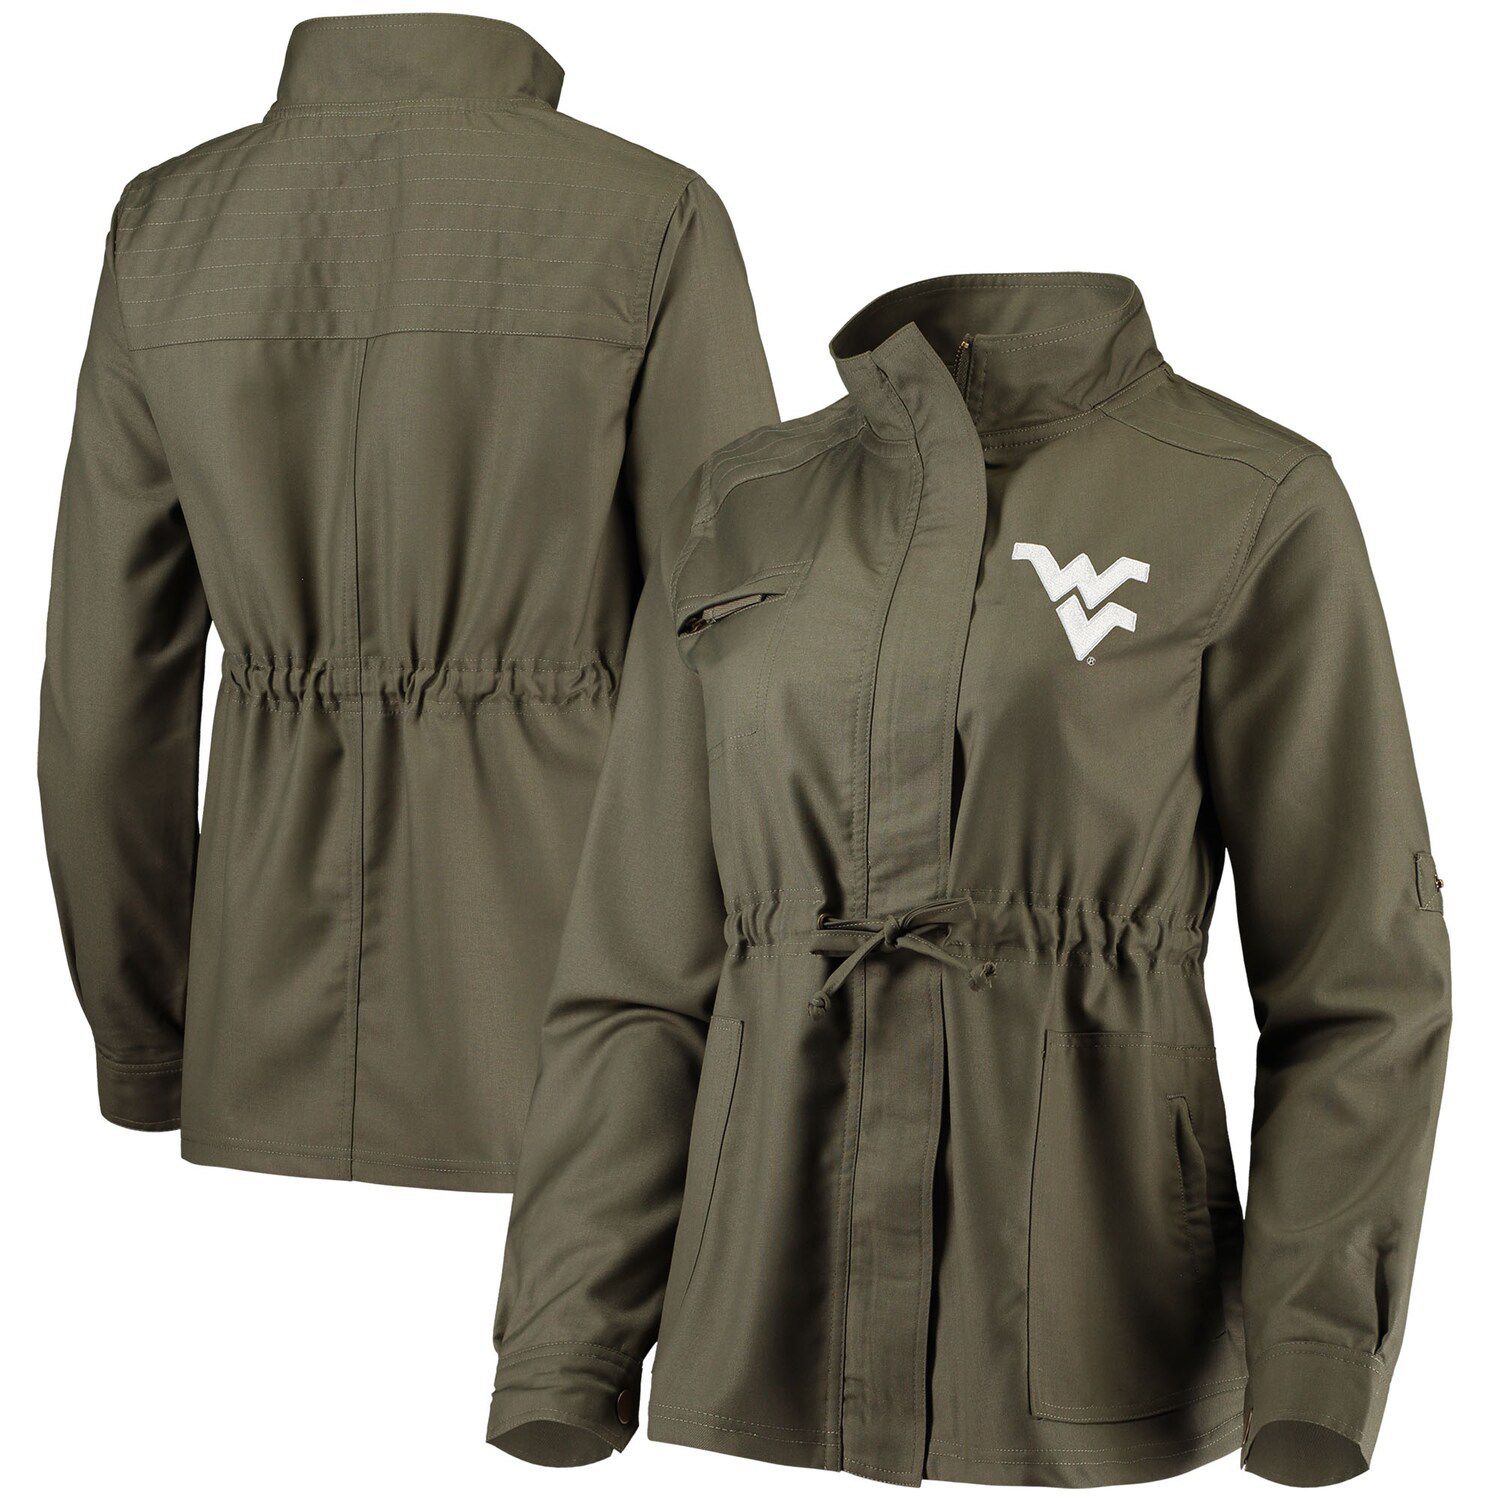 Image for Unbranded Women's Olive West Virginia Mountaineers Sierra Surplus Full-Zip Jacket at Kohl's.